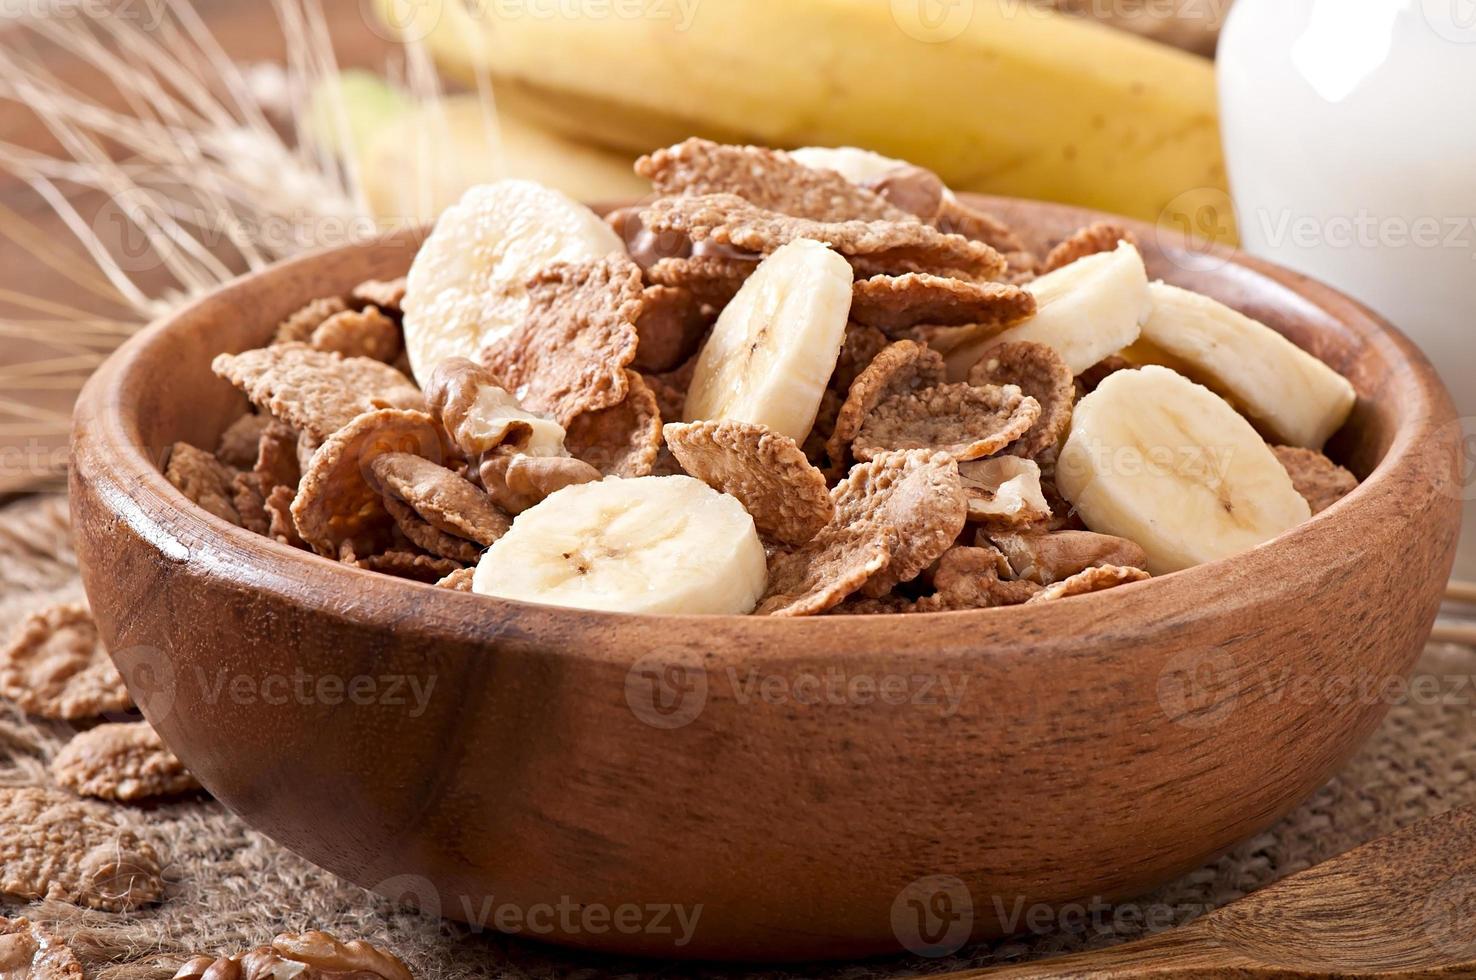 desayuno saludable - muesli de grano entero con una nuez en un tazón de madera foto